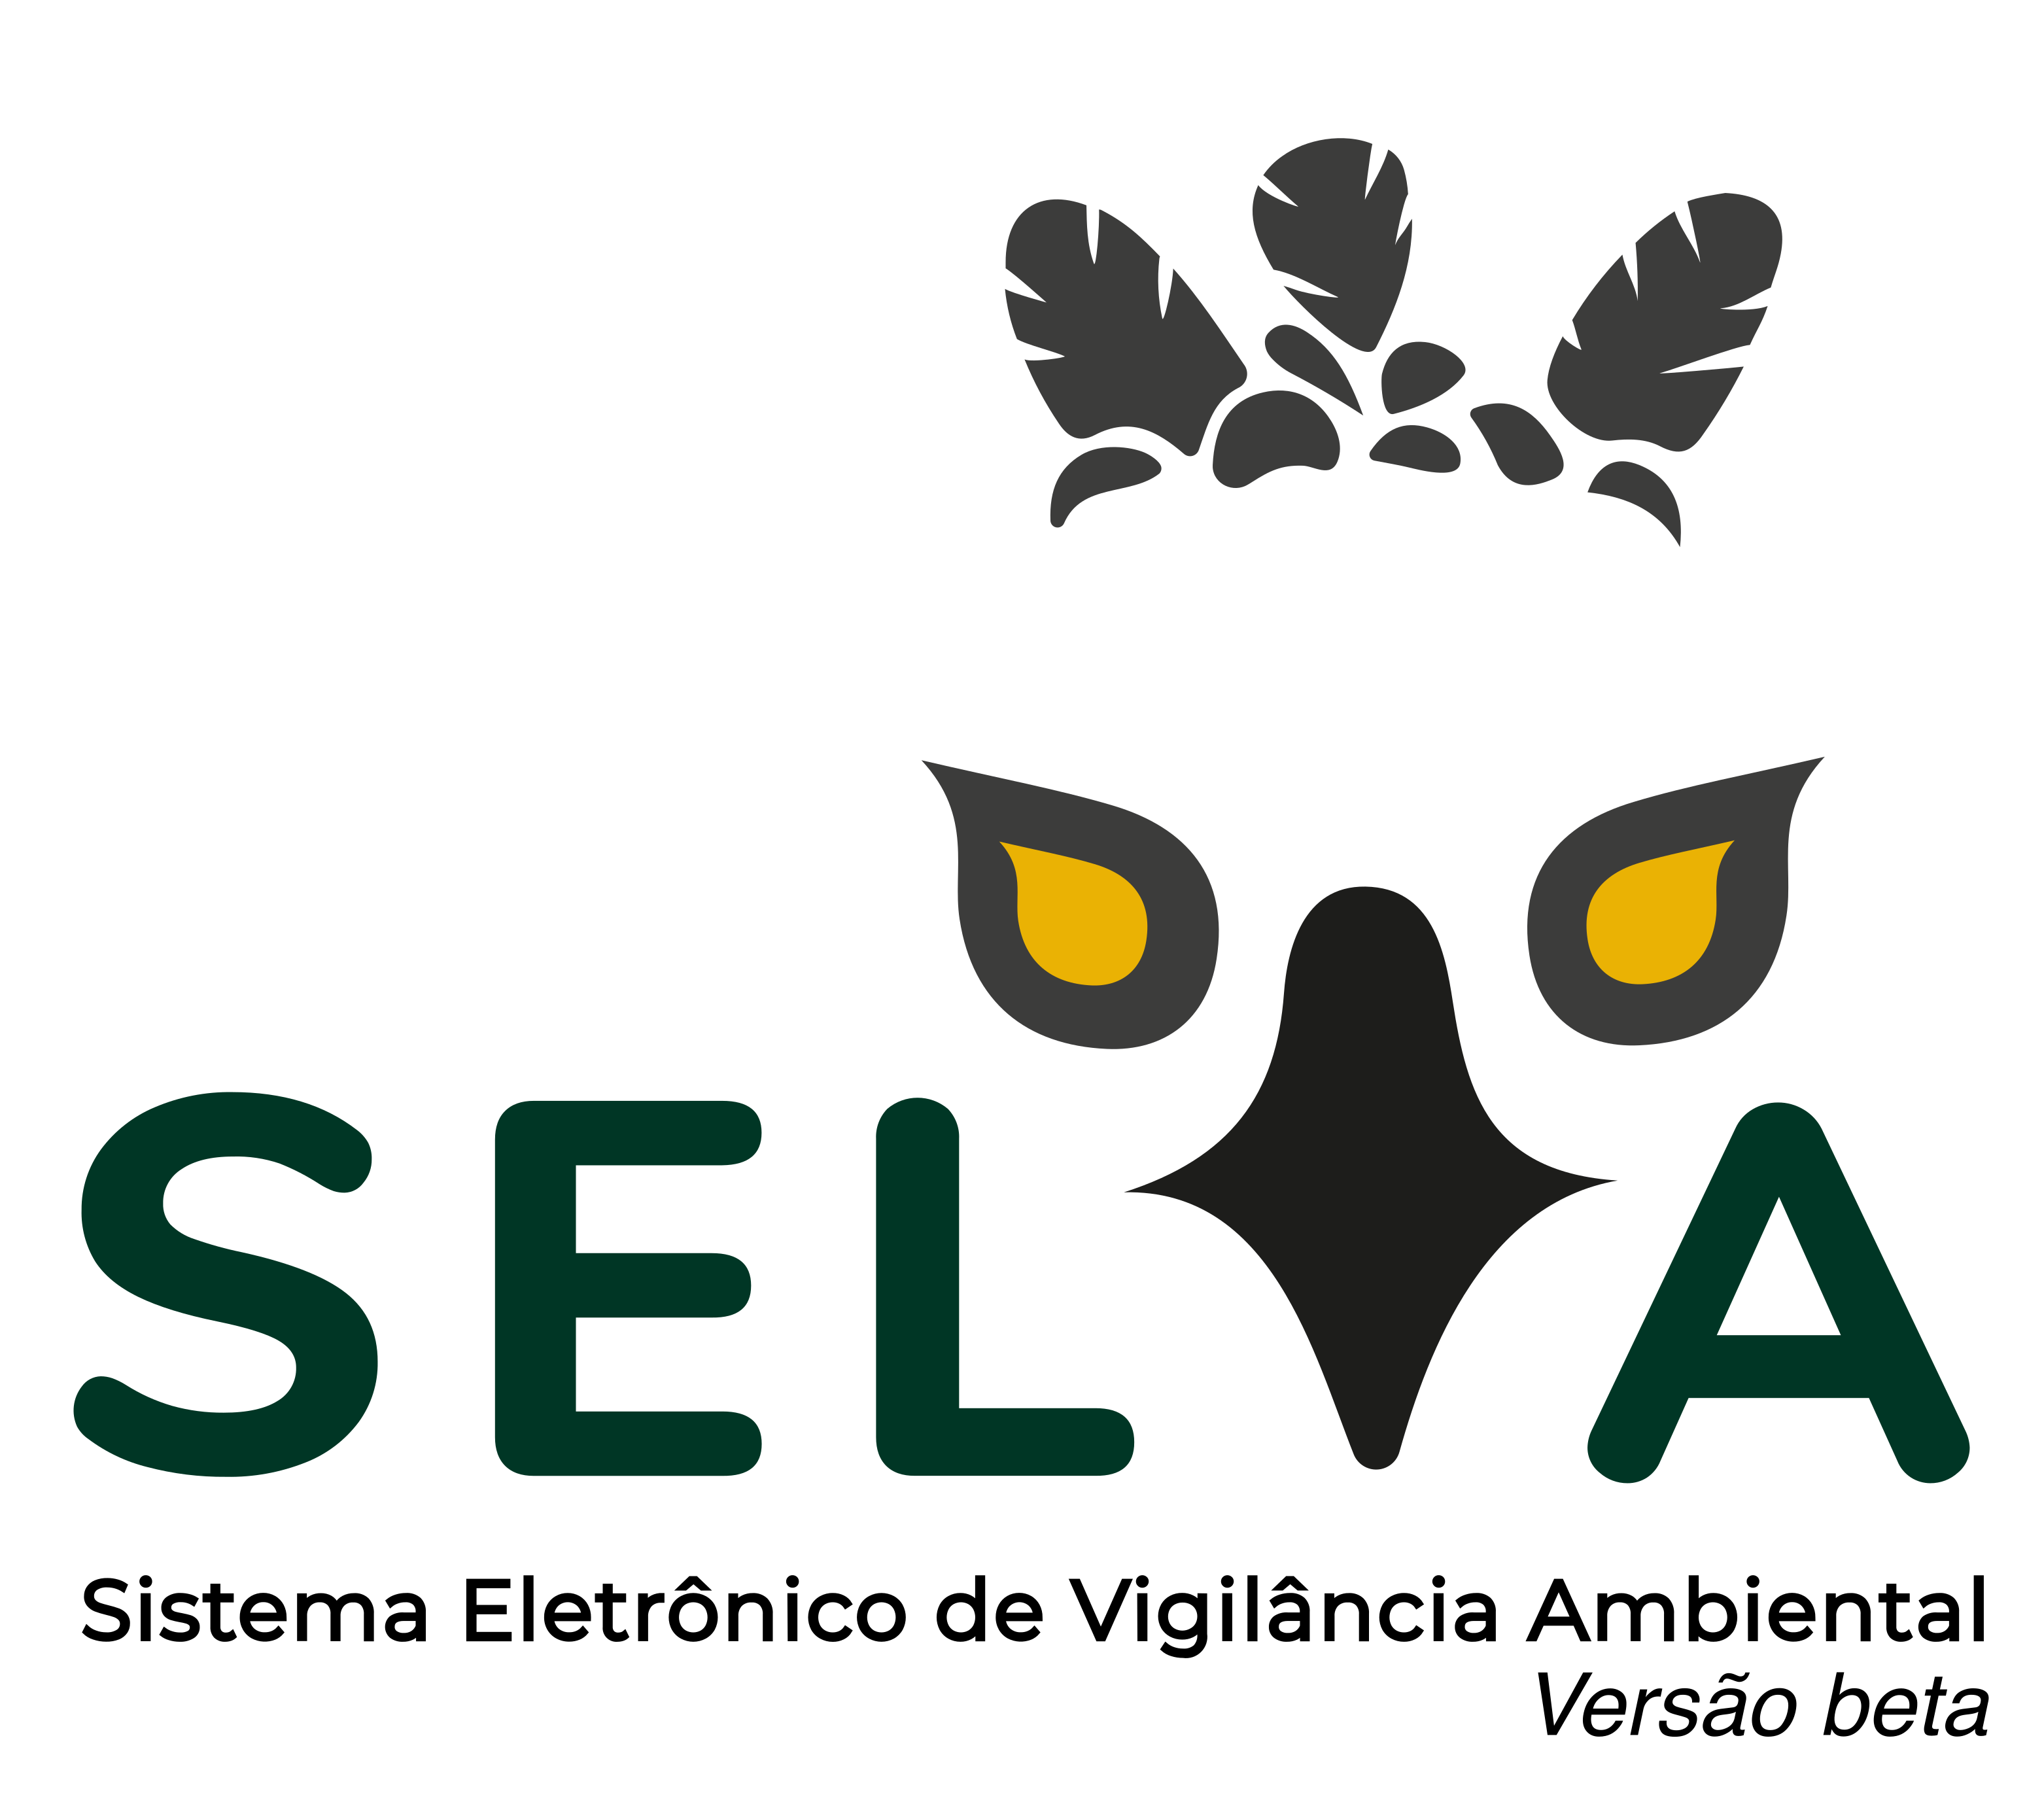 SELVA - Sistema Eletrônico de Vigilância Ambiental